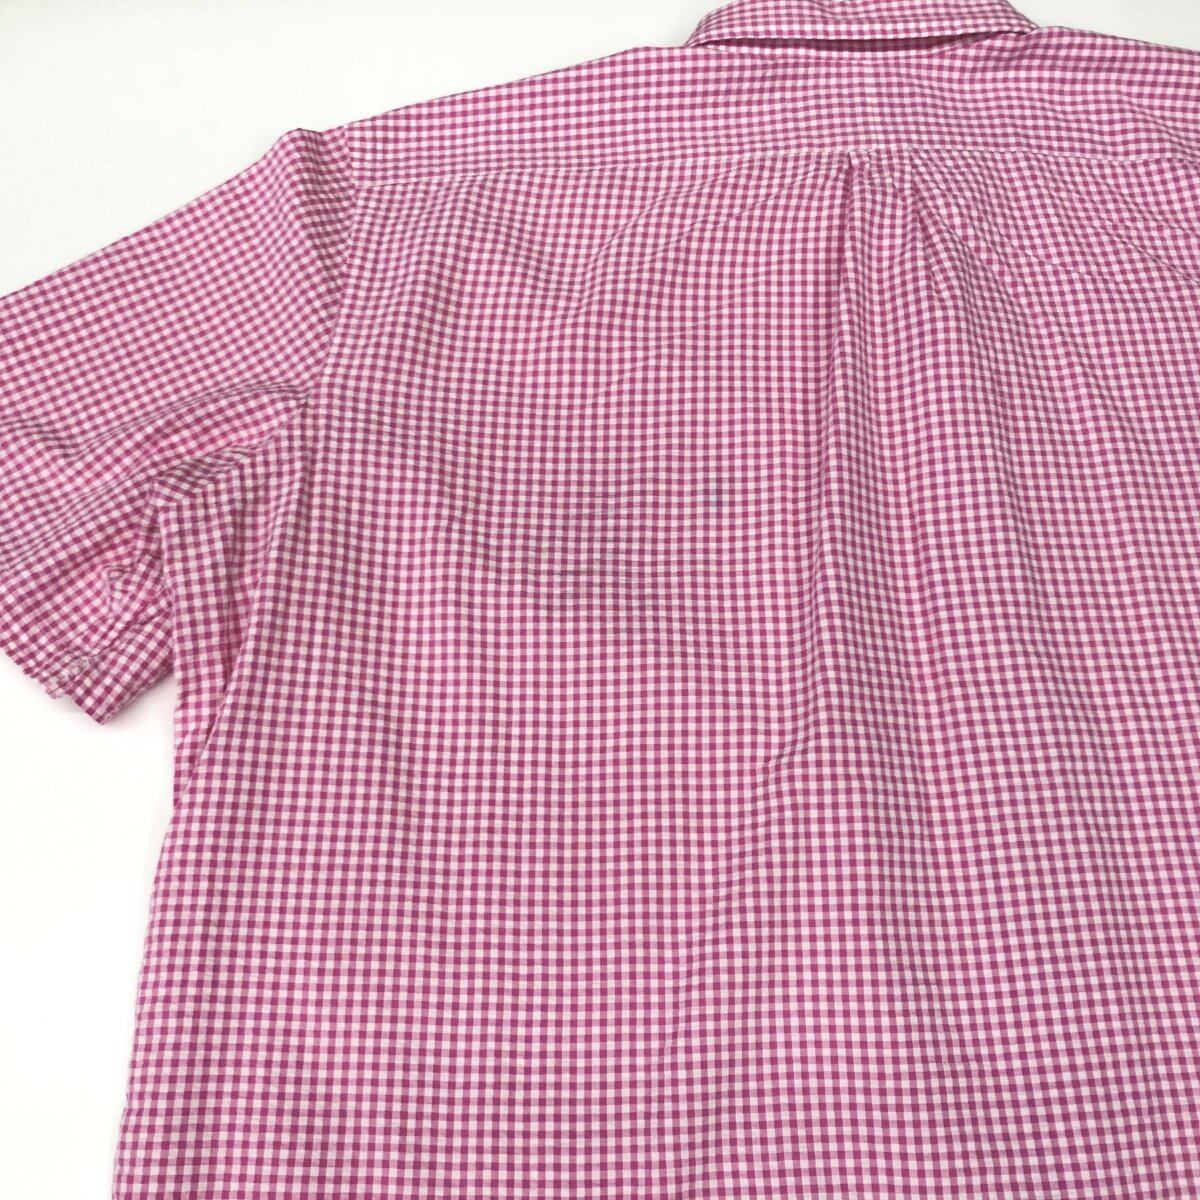 ラルフローレン シアサッカー 半袖シャツ ボタンダウンシャツ ピンク